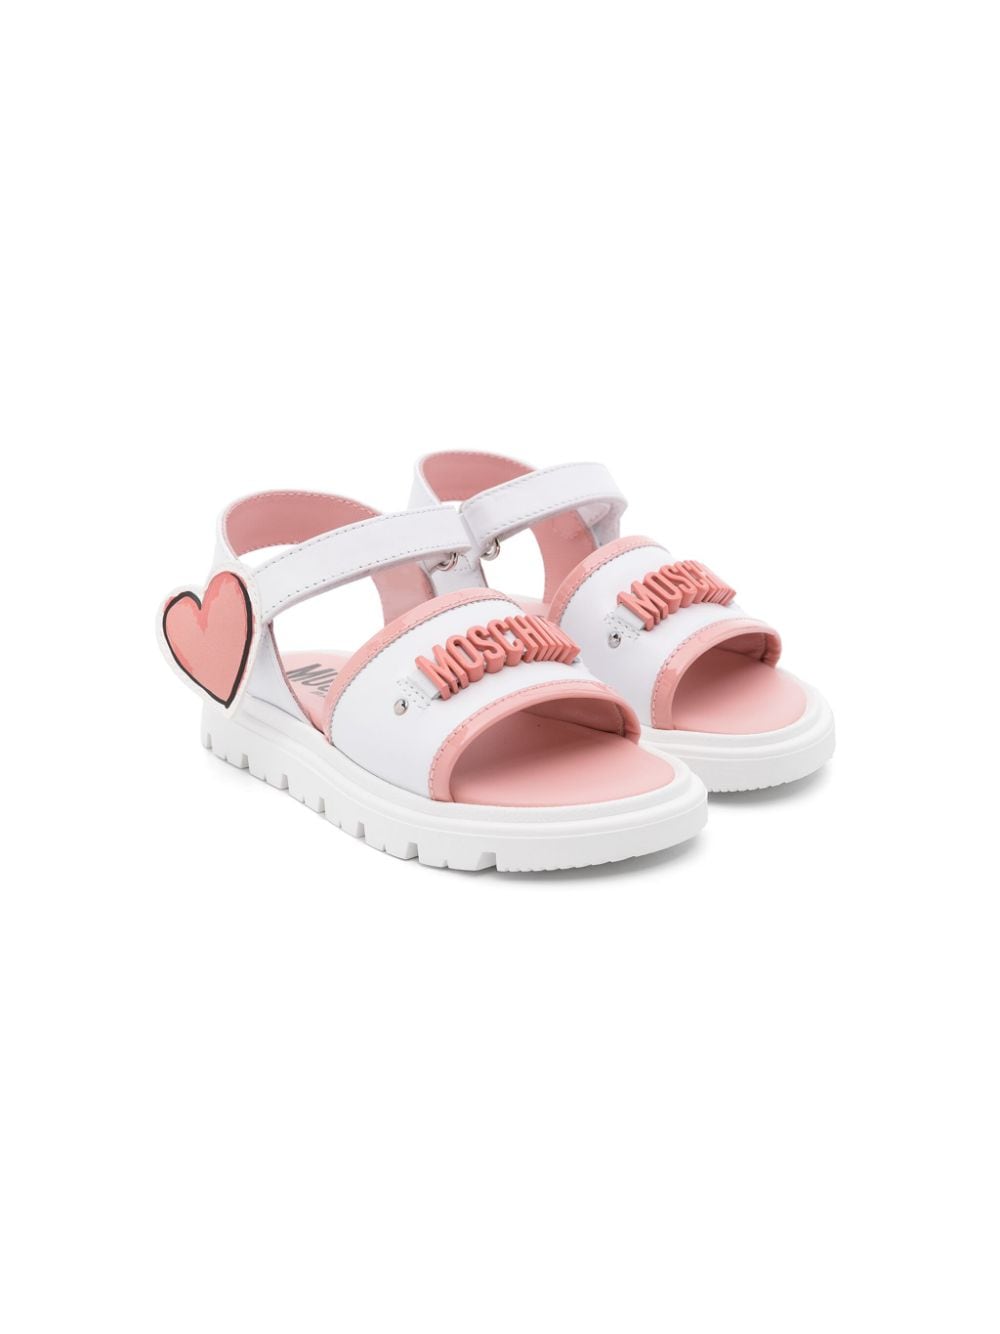 Sandalo bianco heart rosa